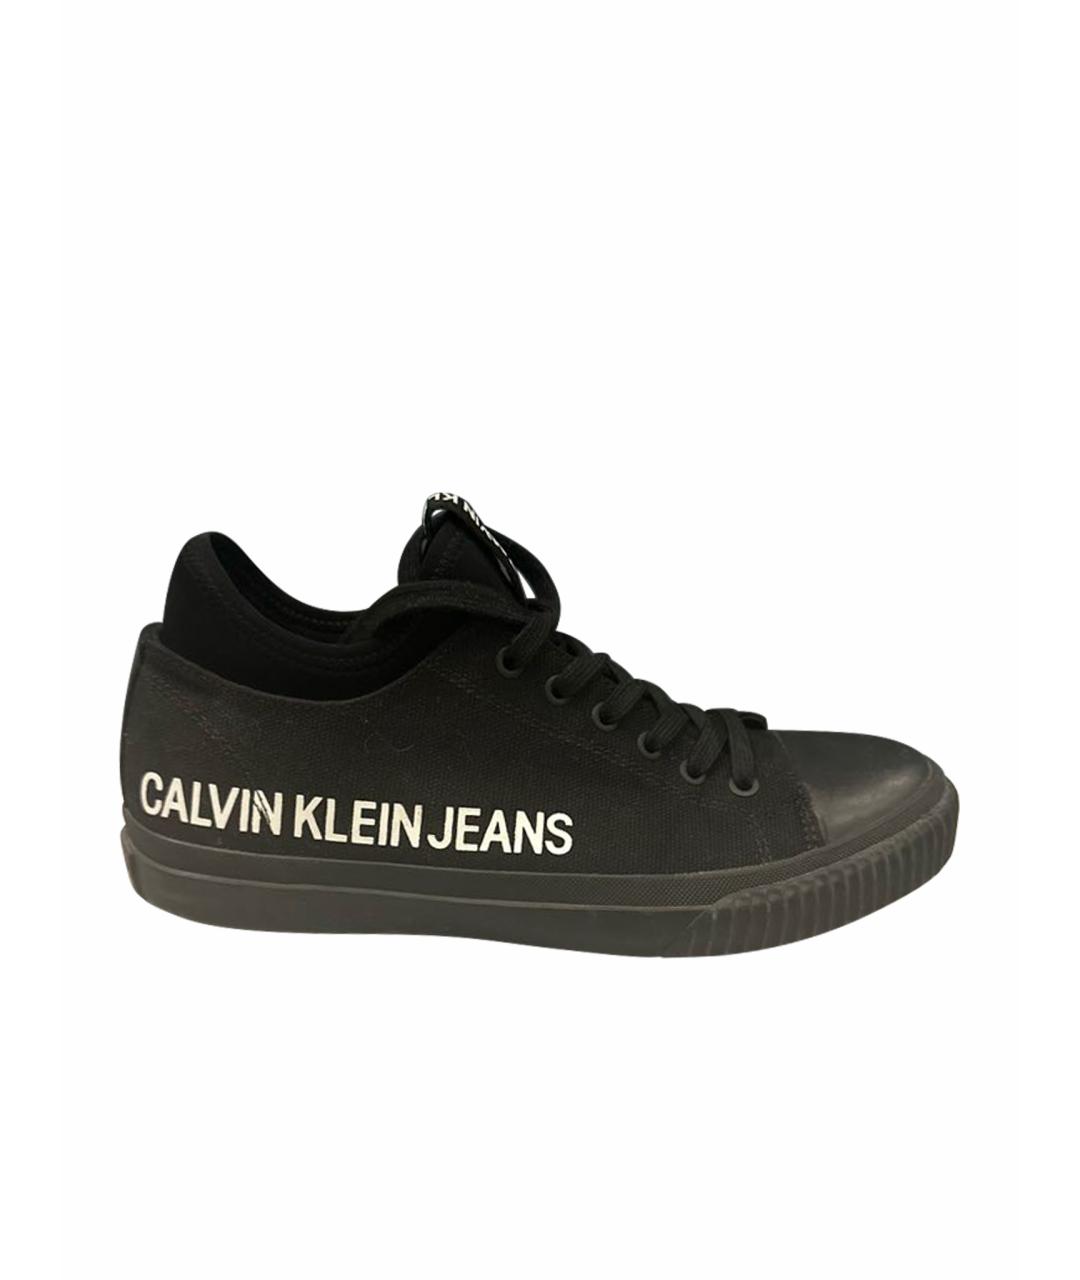 CALVIN KLEIN JEANS Черные текстильные низкие кроссовки / кеды, фото 1